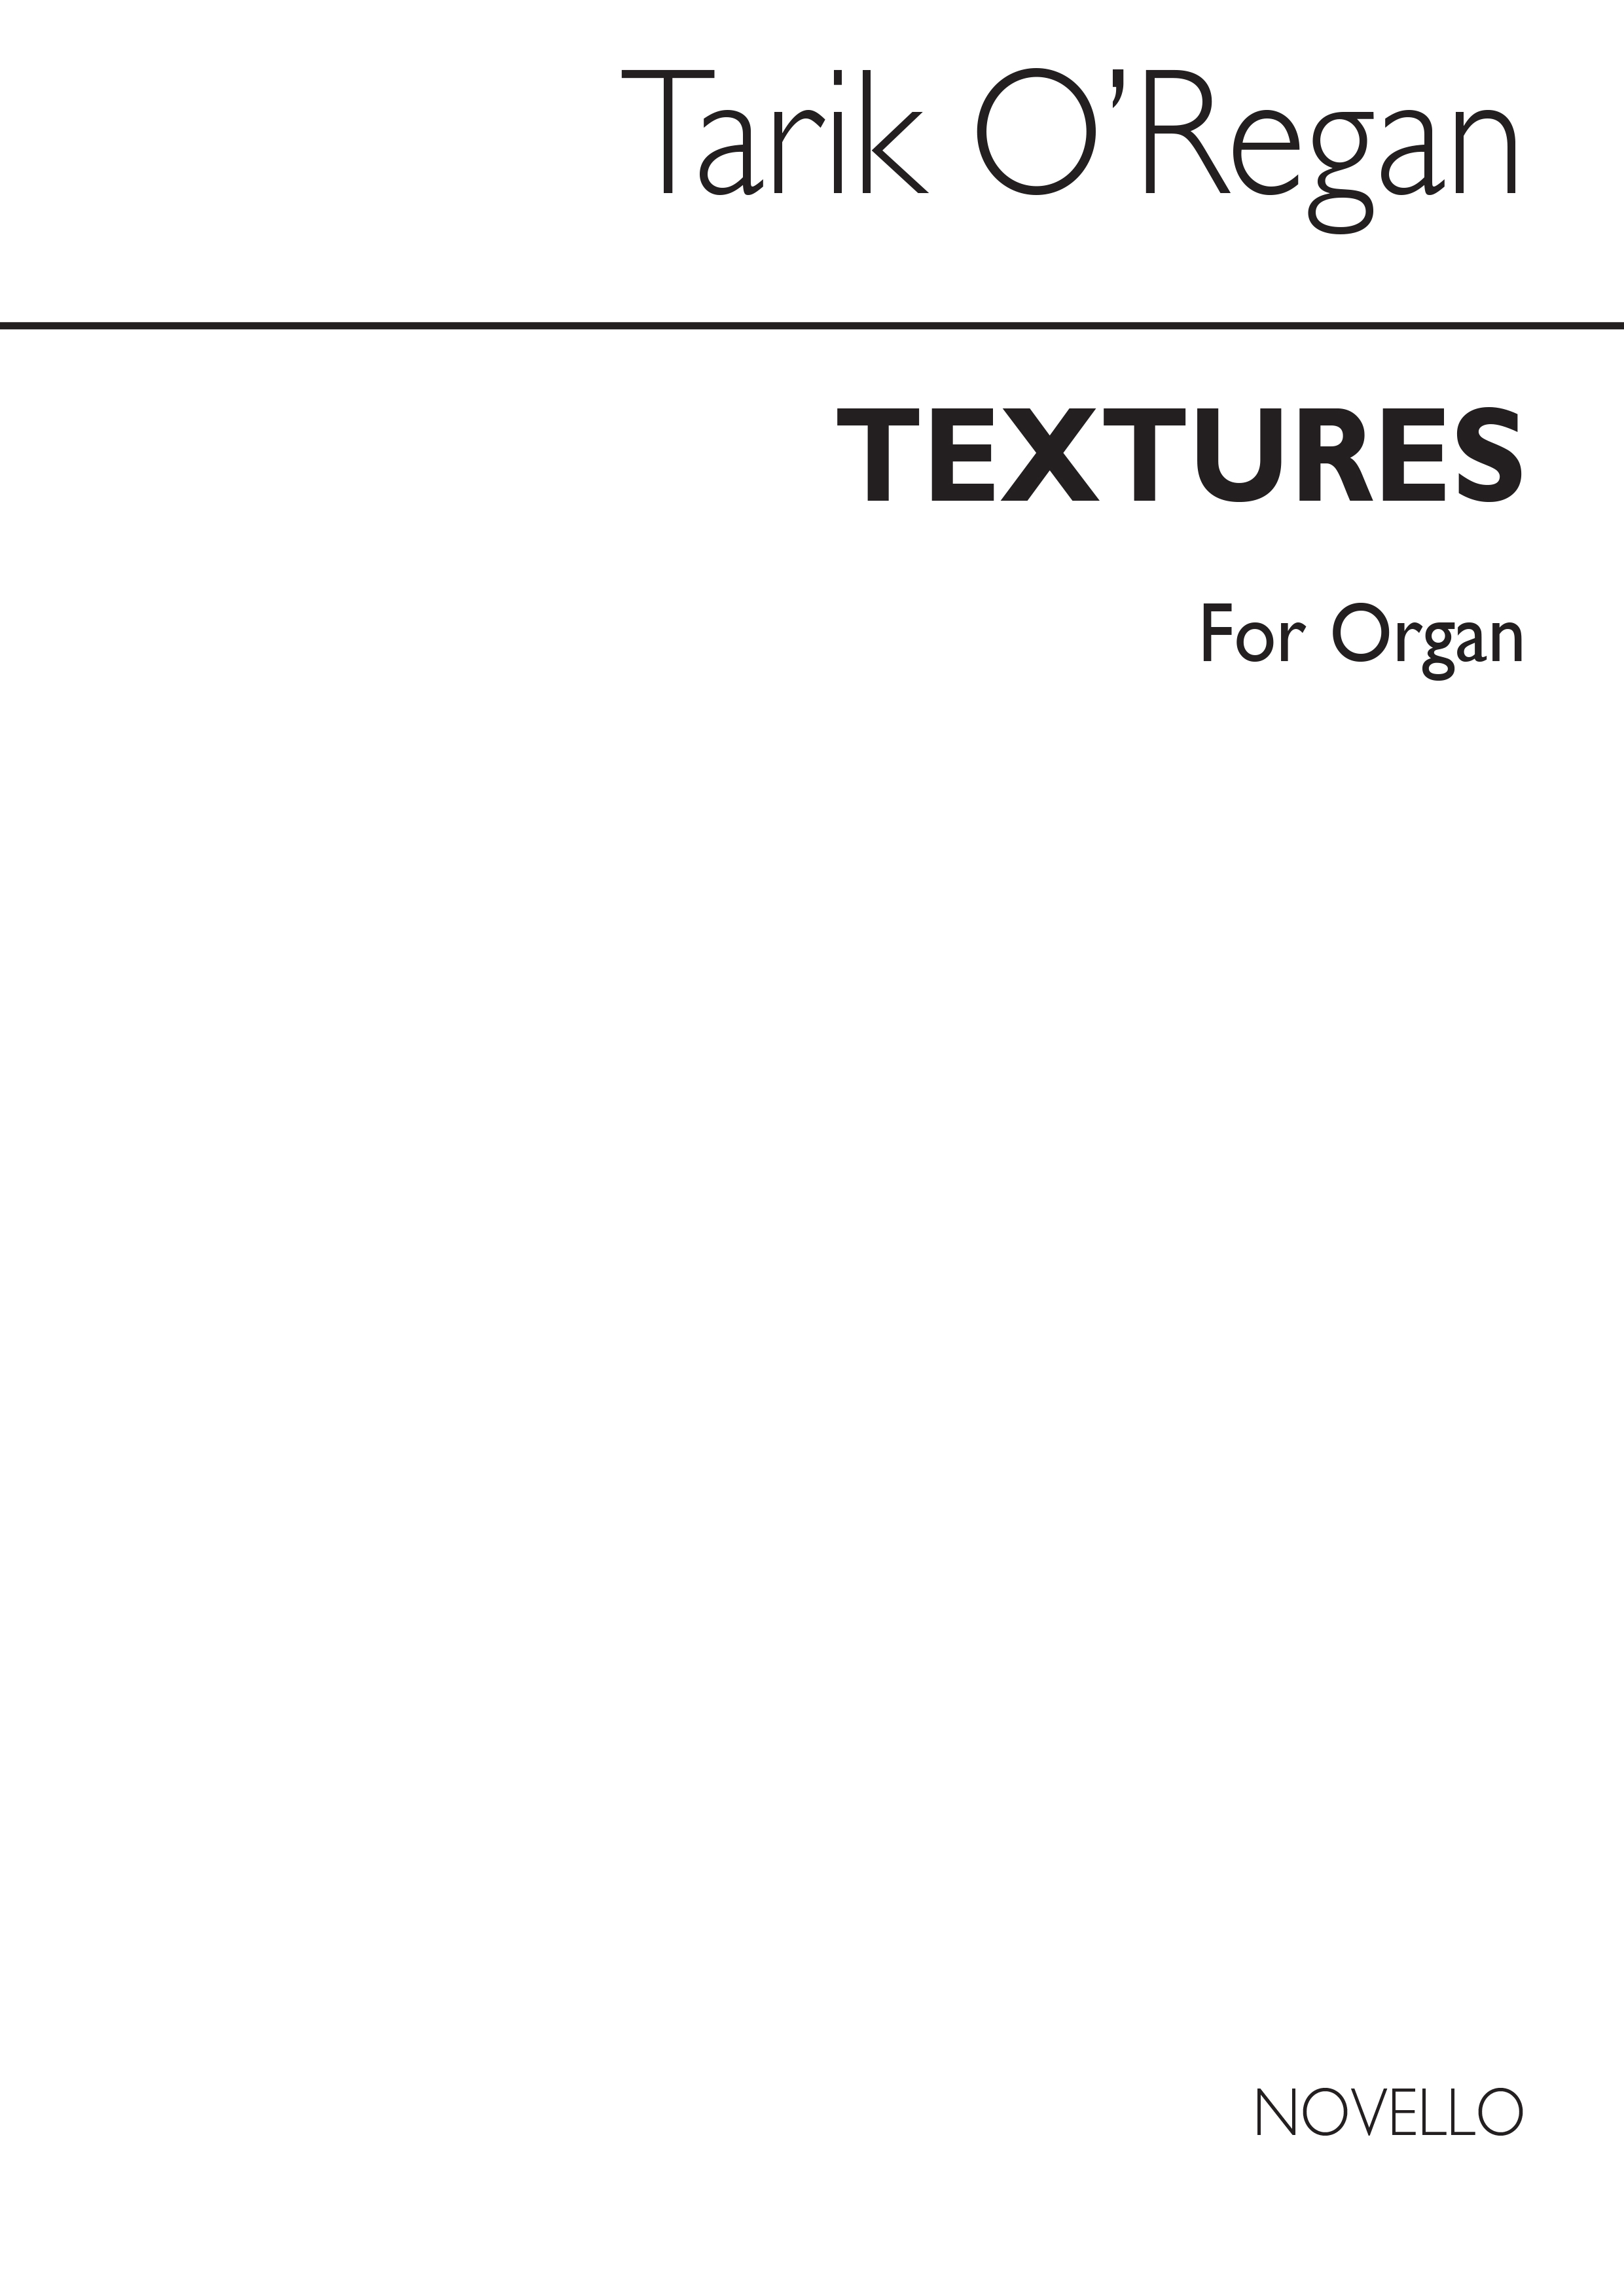 Tarik O'Regan: Textures